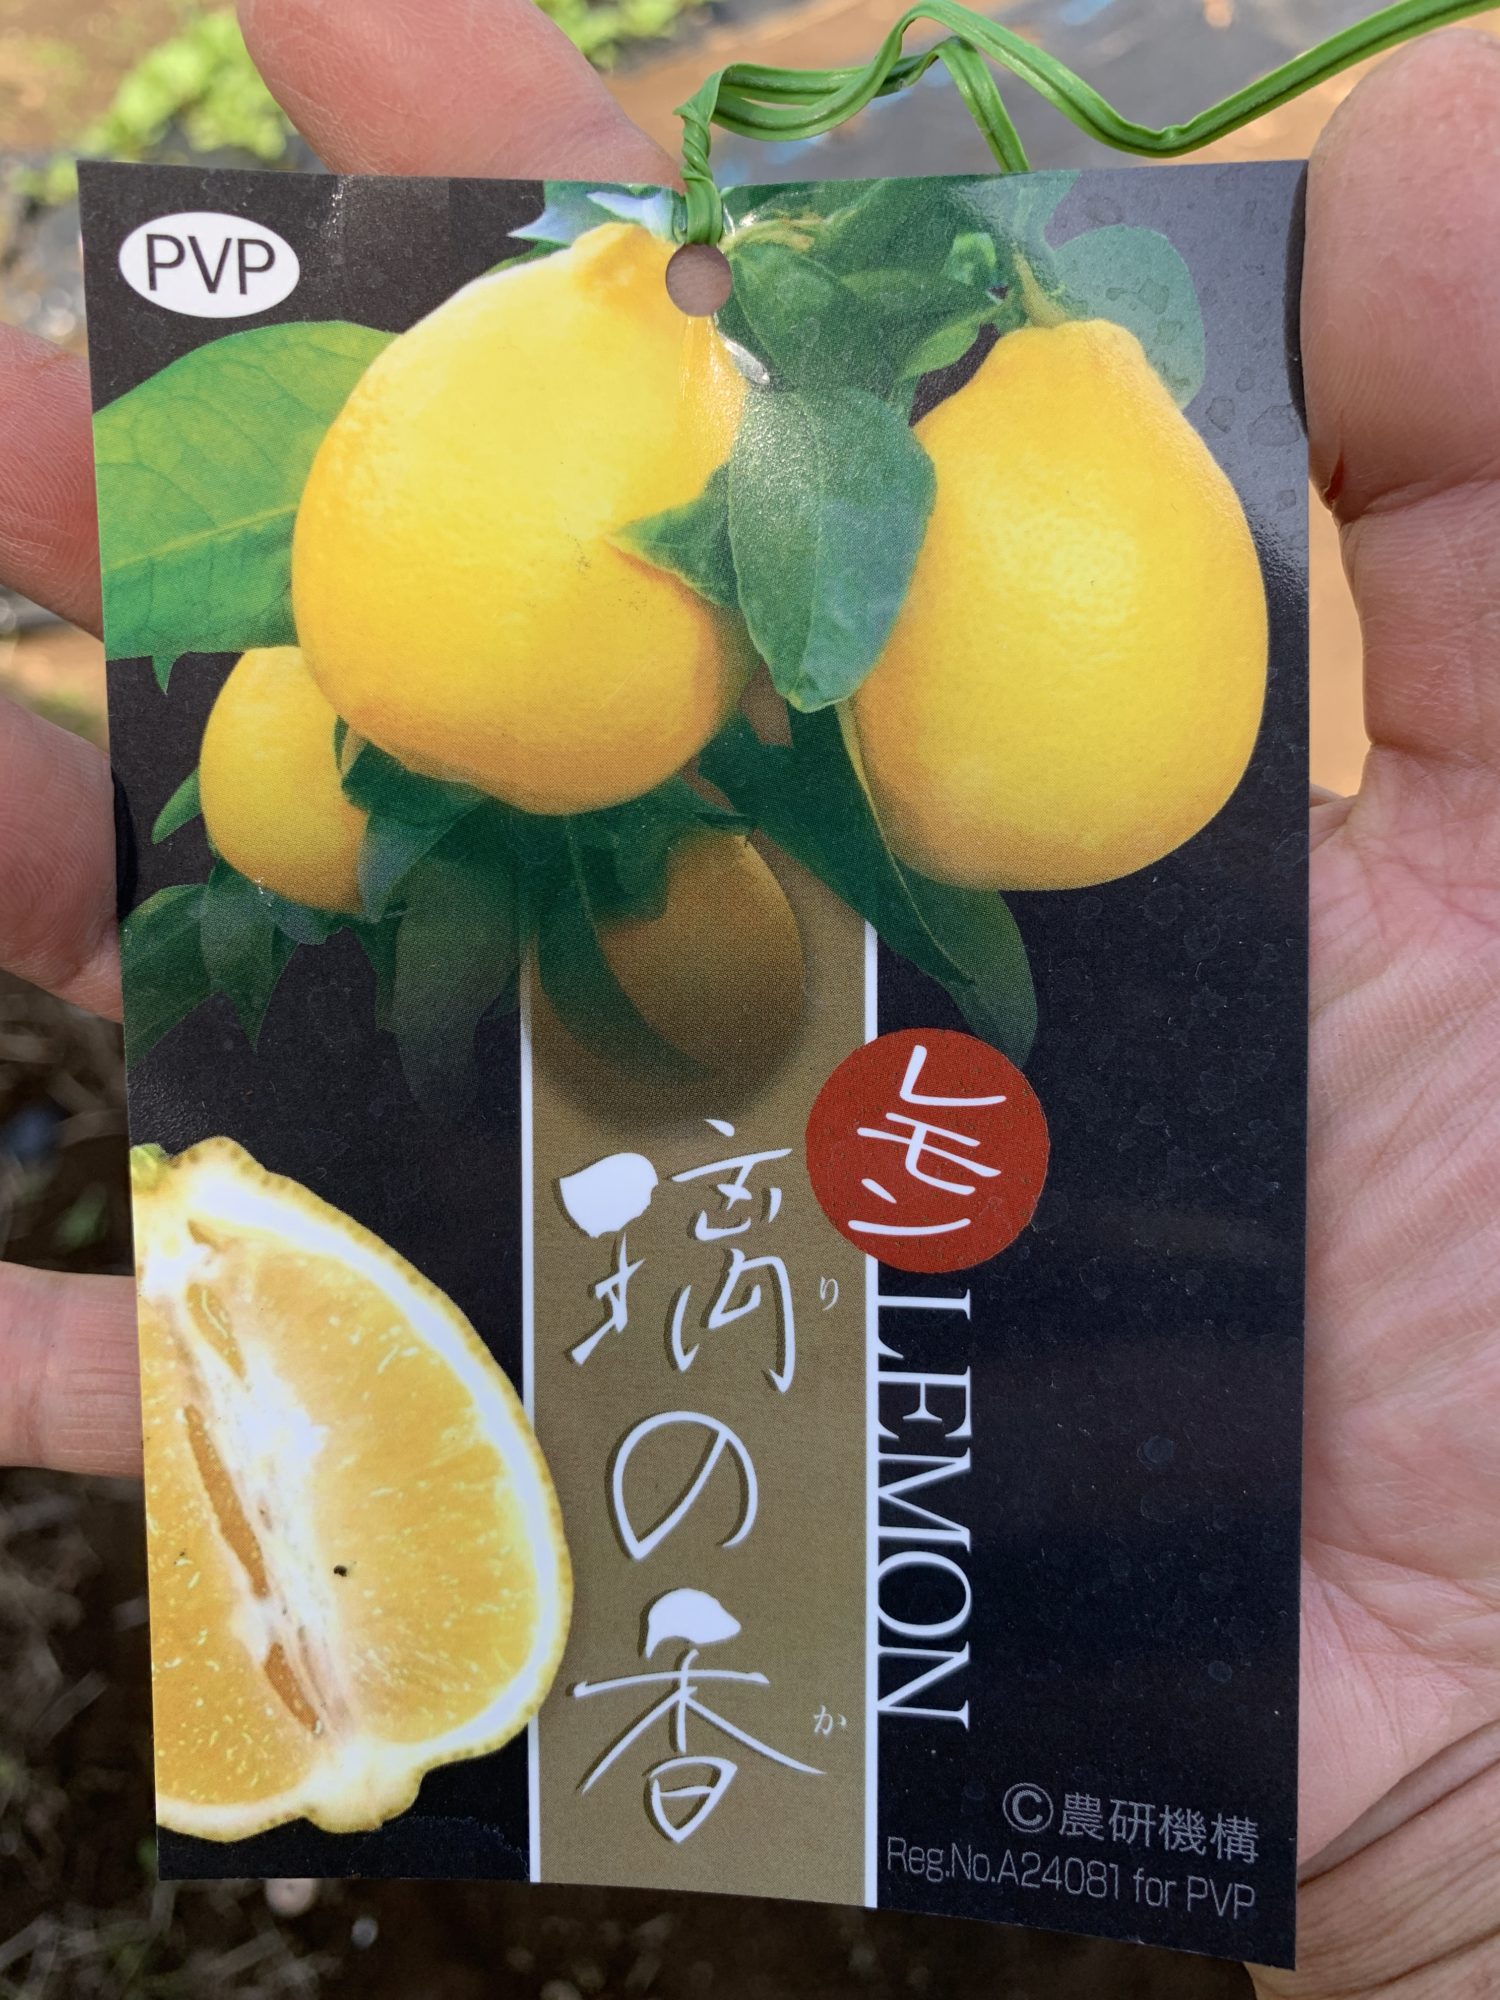 レモンの苗木 璃の香 りのか とレモネード ちきゅうさんドットコム